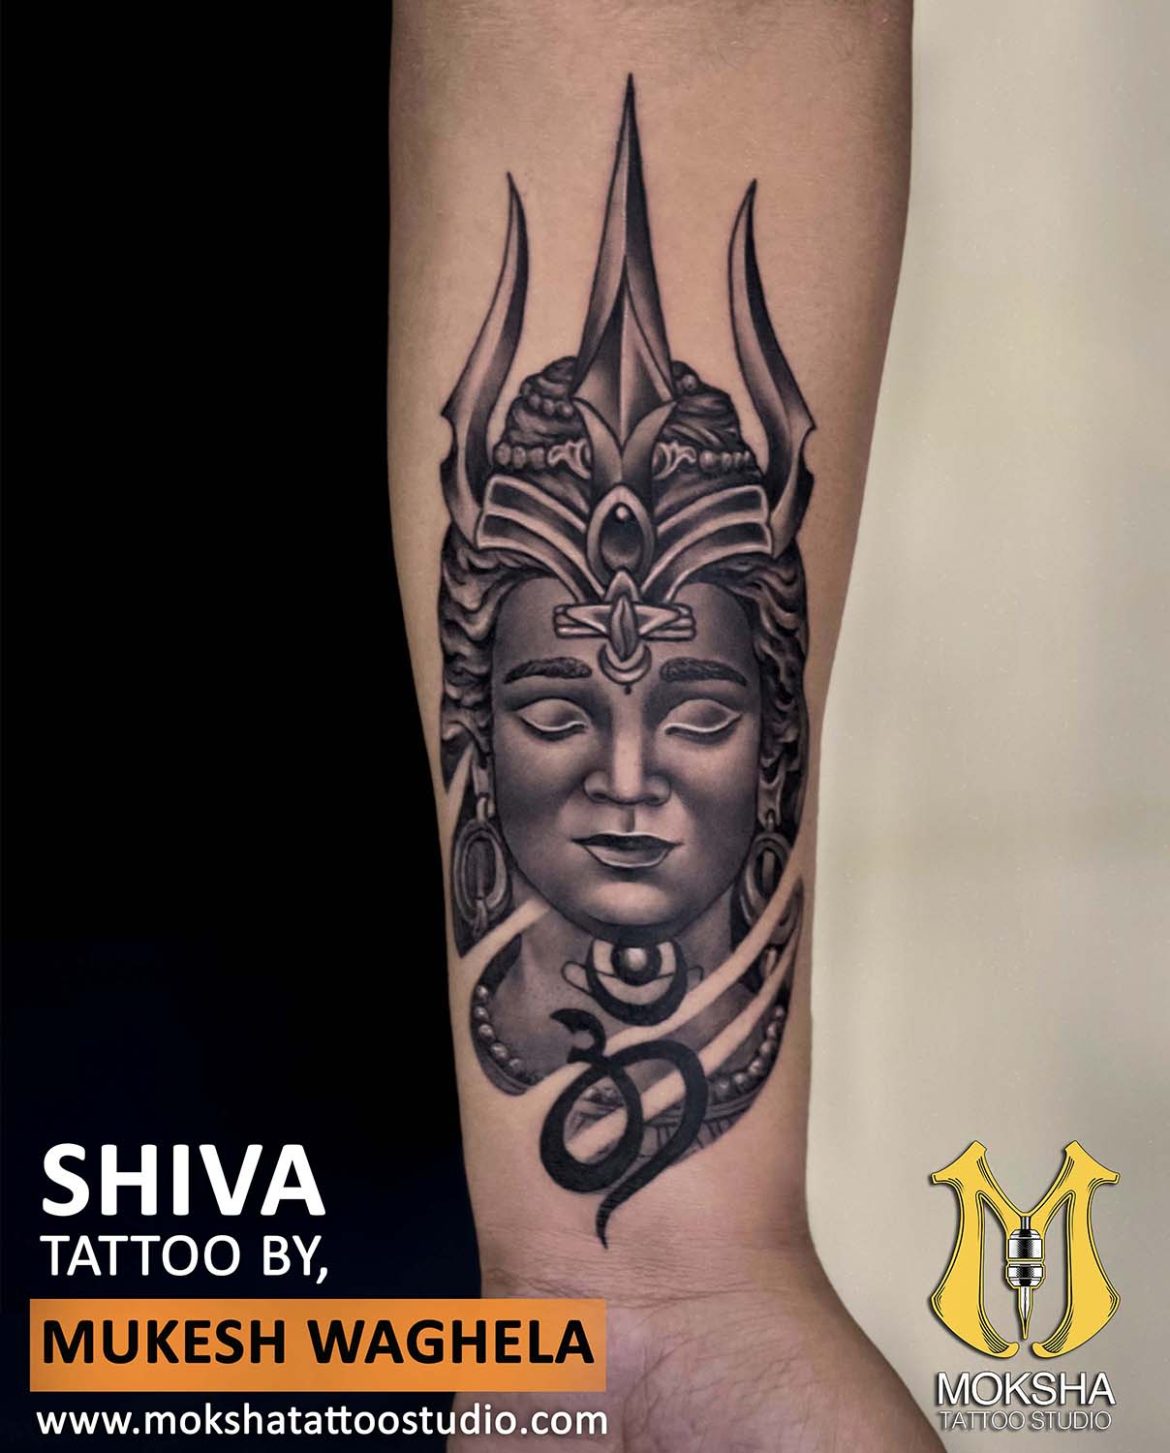 Lord Shiva Best Tattoo Designs for Men on Arm - Ace Tattooz